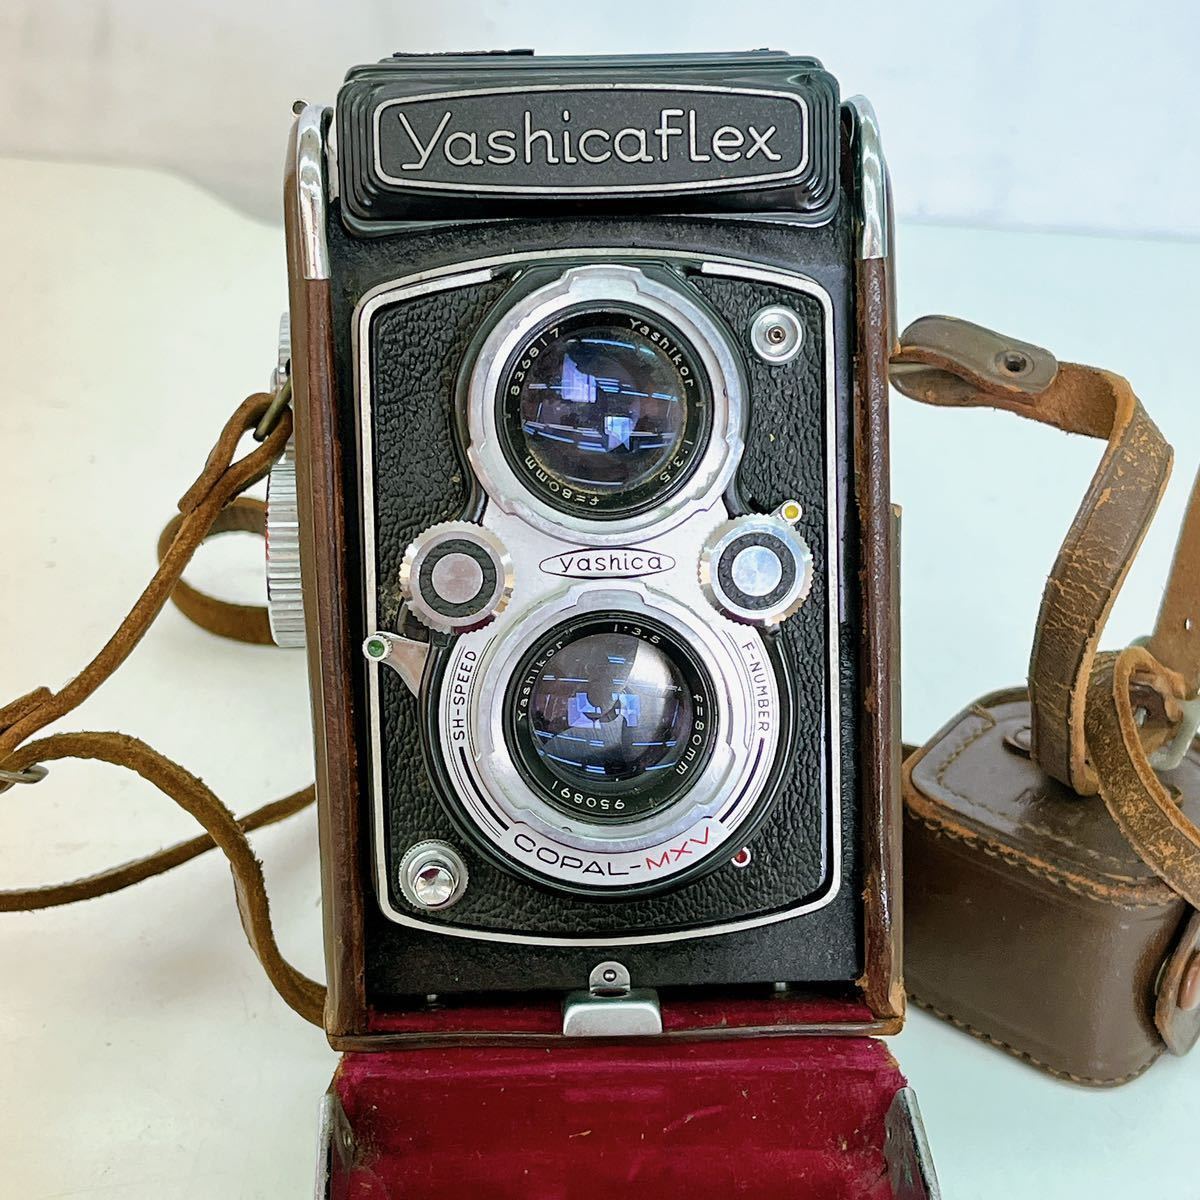 5AA74 Yashica flex ヤシカ フレックス model B 二眼レフ カメラ